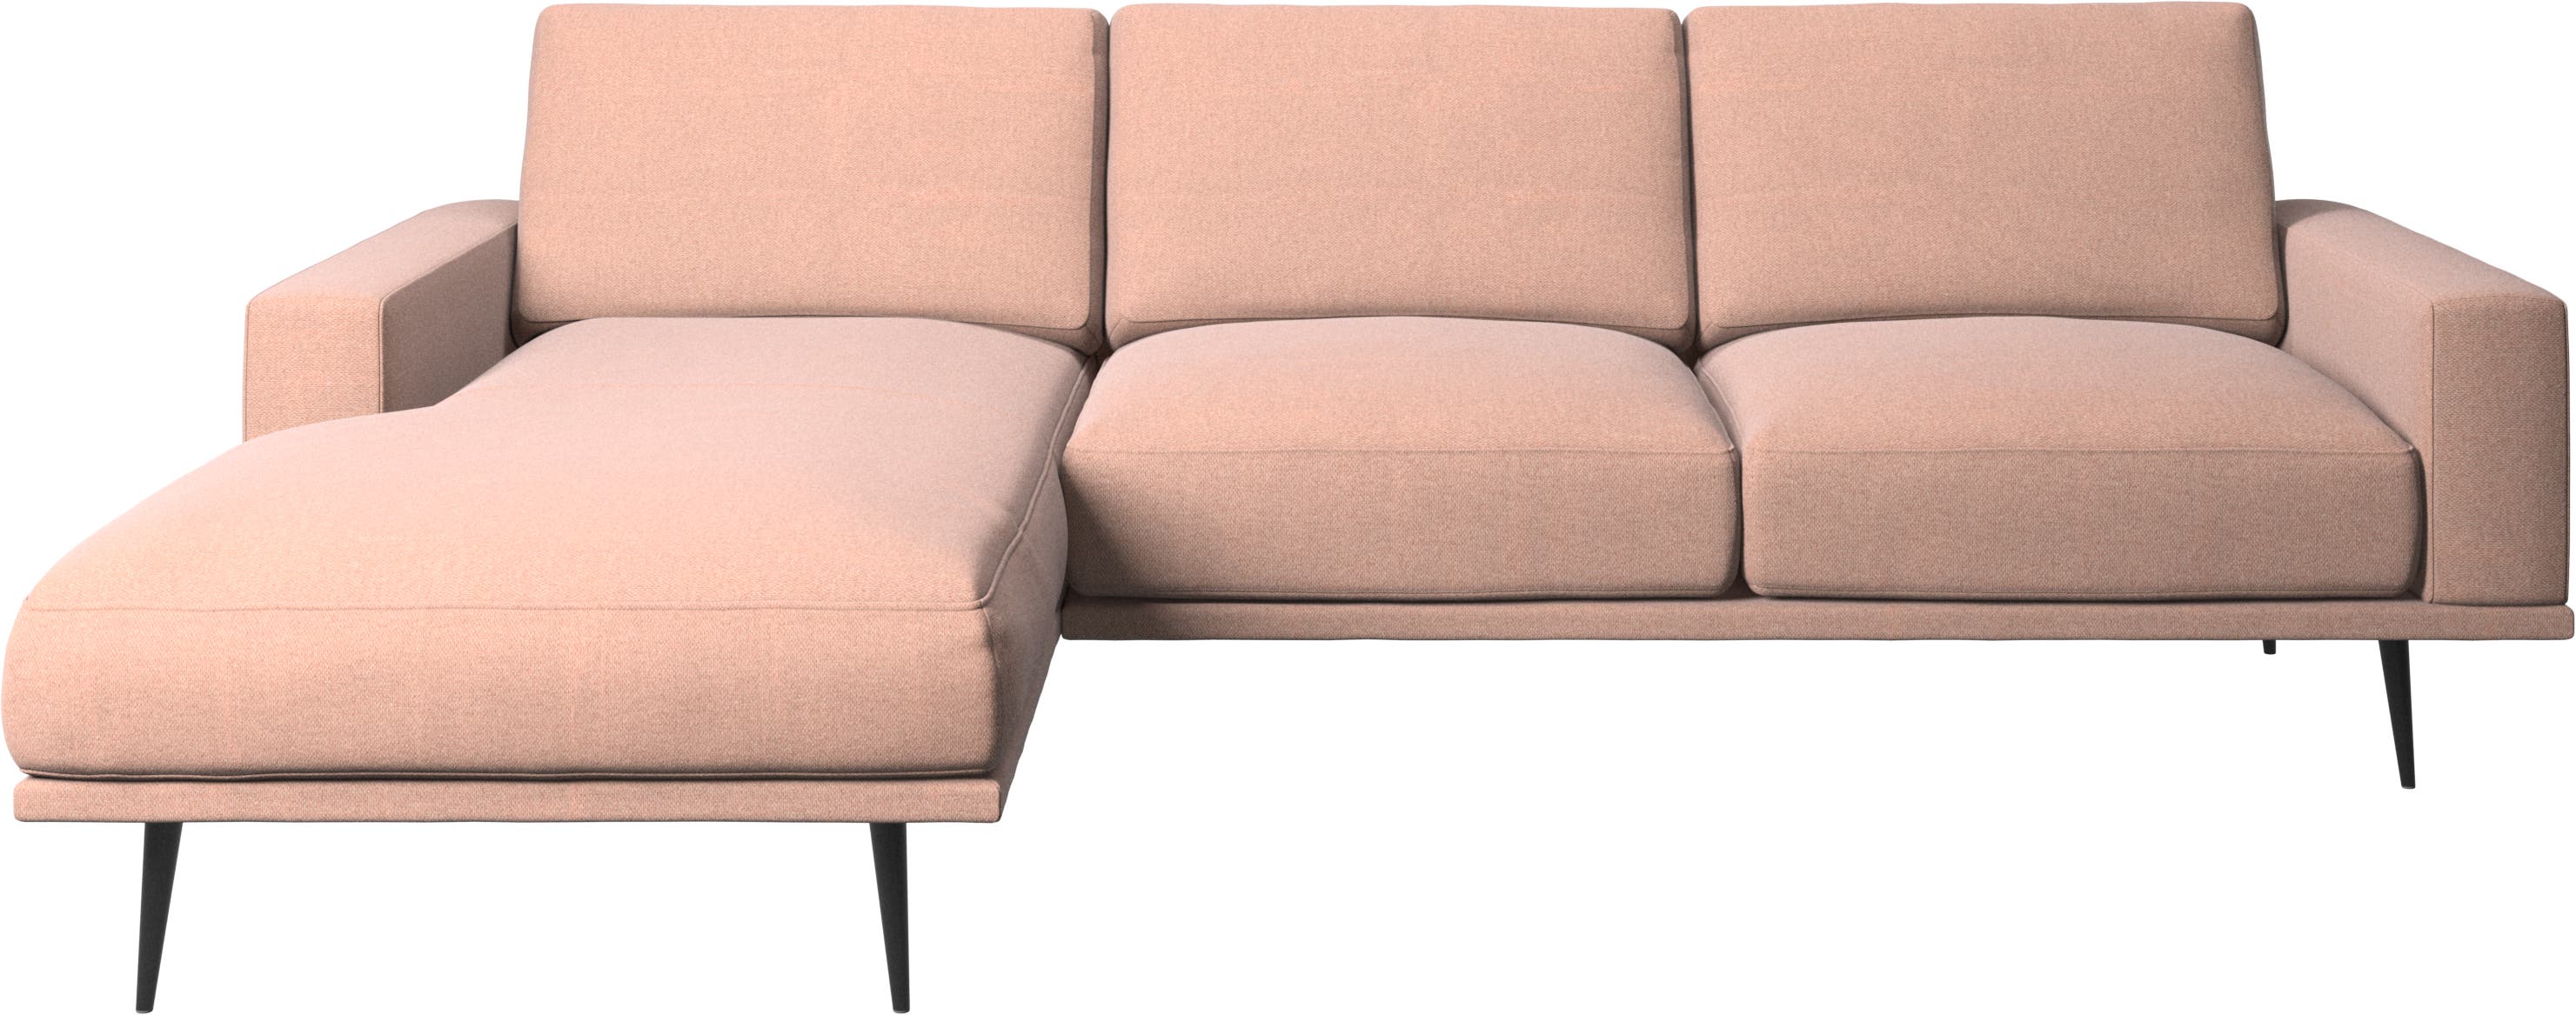 Sofá Carlton com módulo chaise-longue